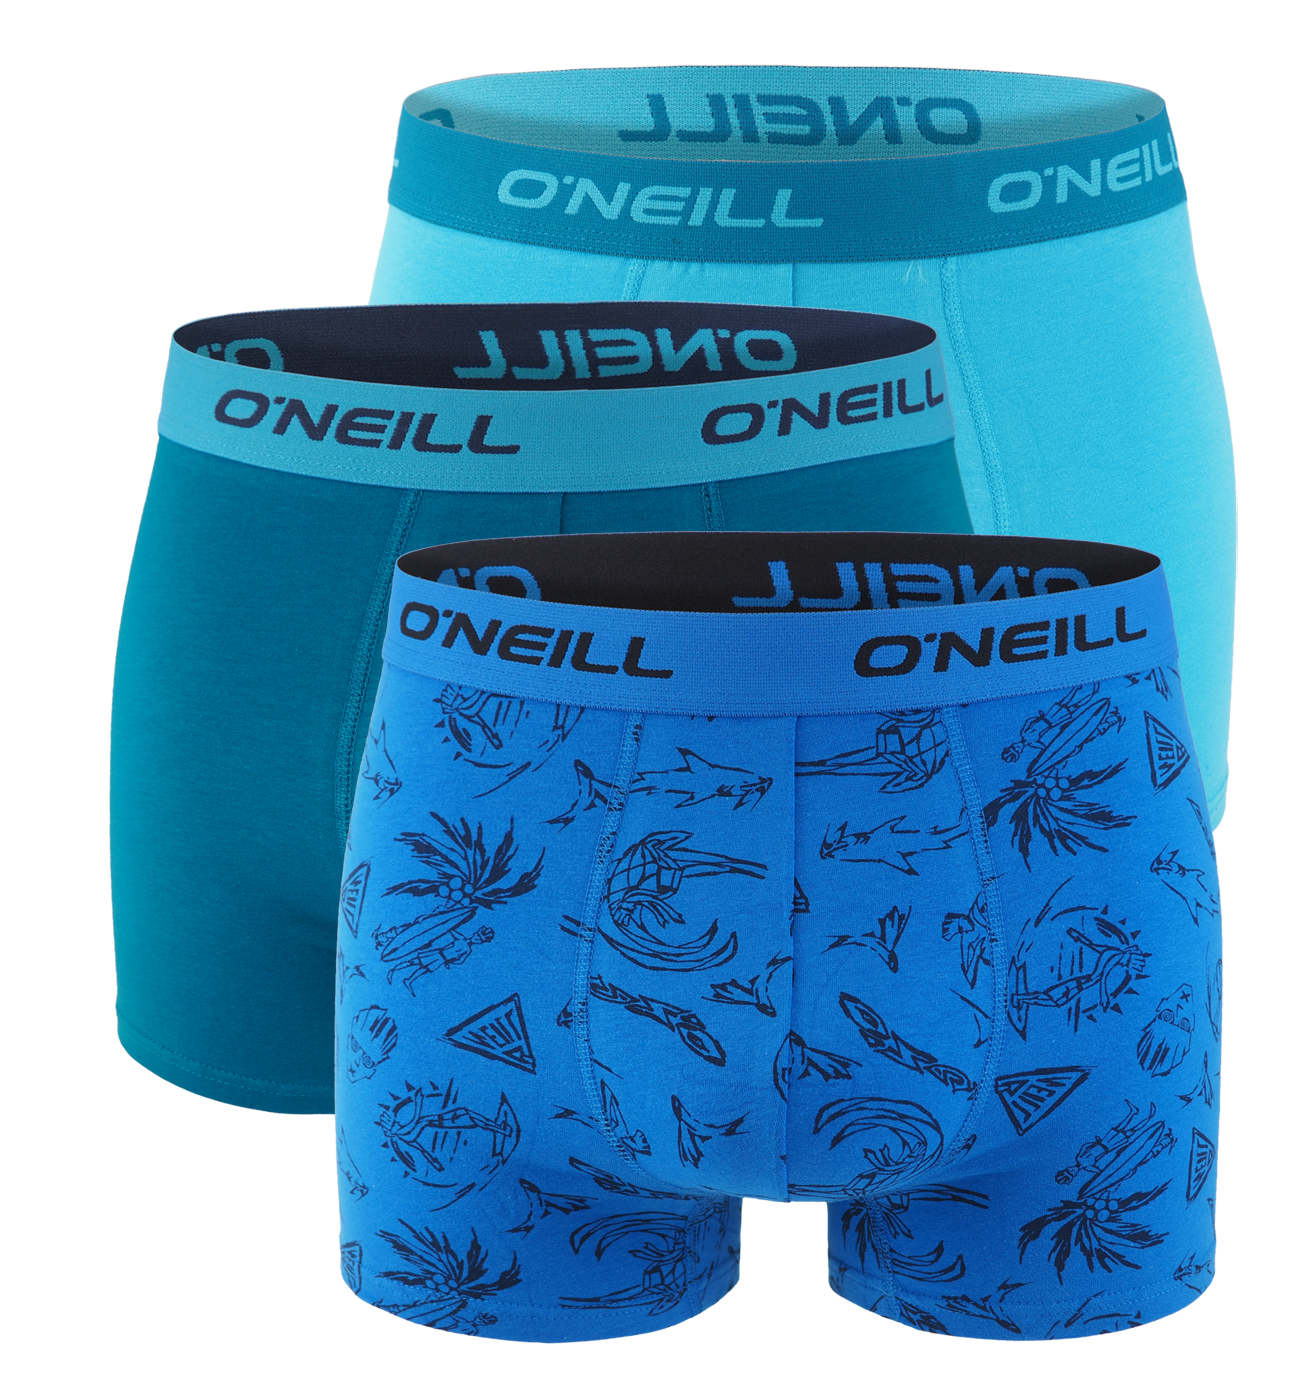 O'NEILL - boxerky 3PACK ocean & beach blue color combo - limitovana edicia-XL (96-102 cm)